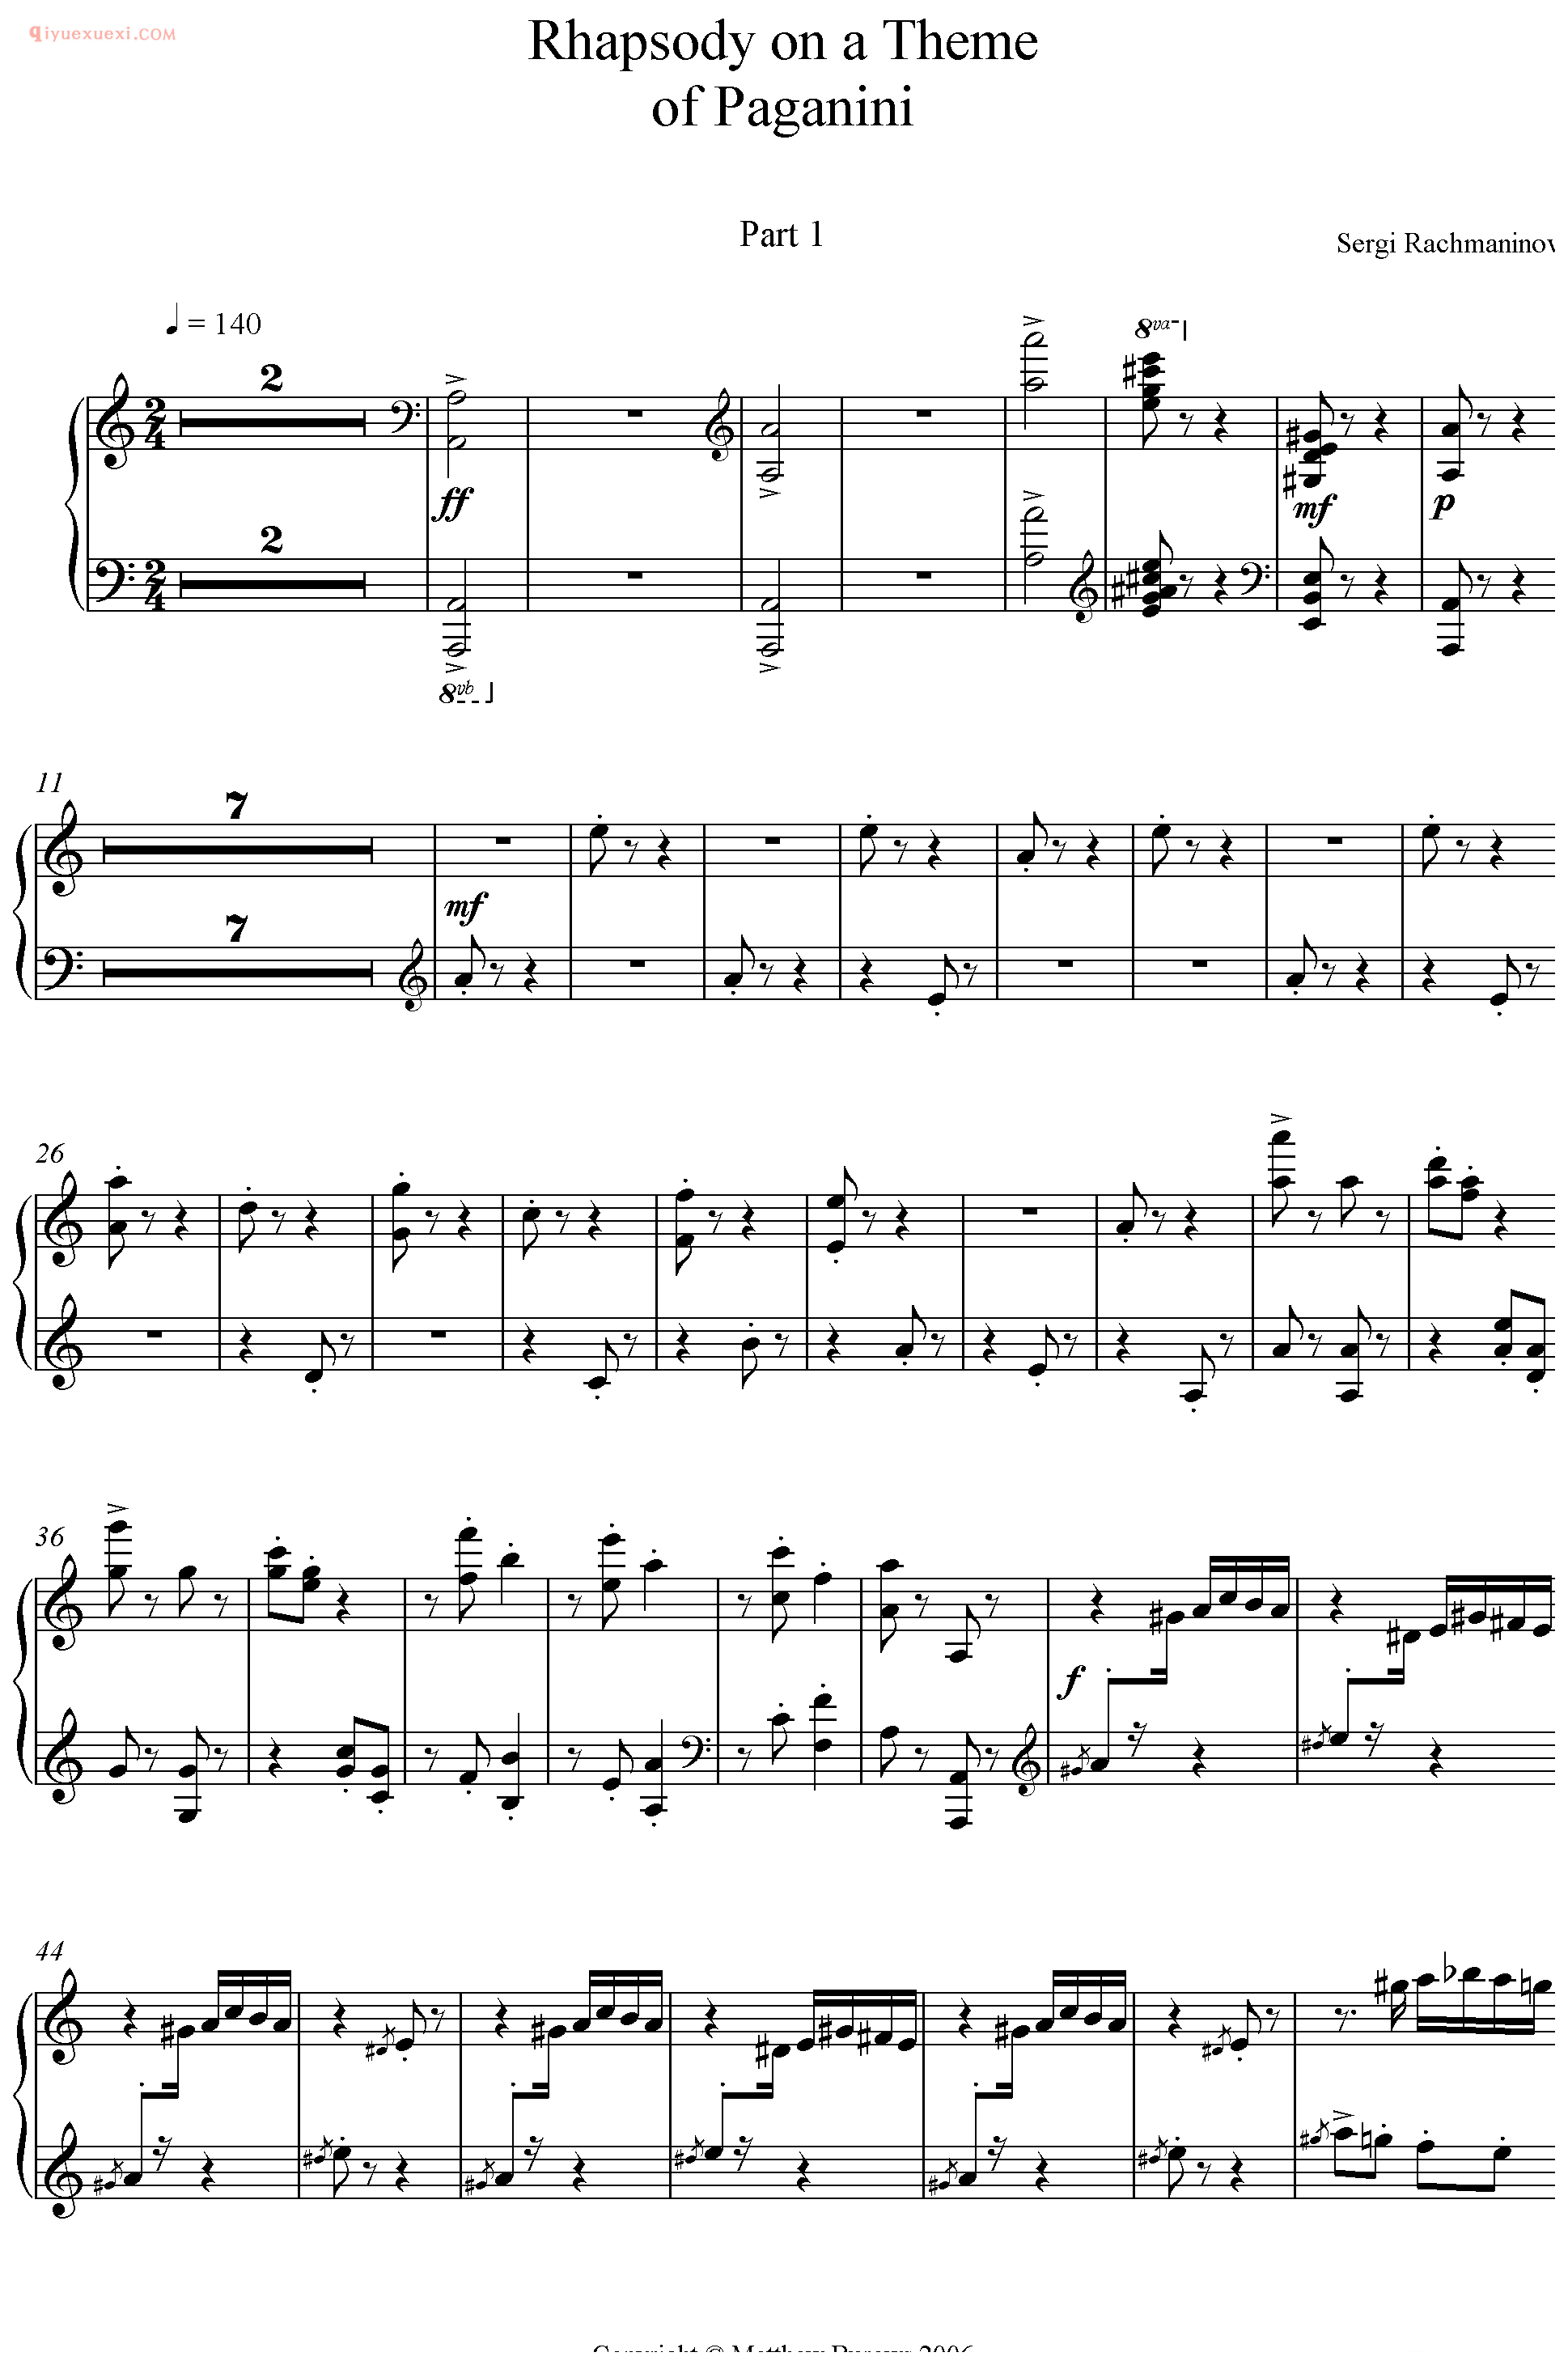 帕格尼尼主题狂想曲 Rhapsody On A Theme Of Paganini (Maksim Version)